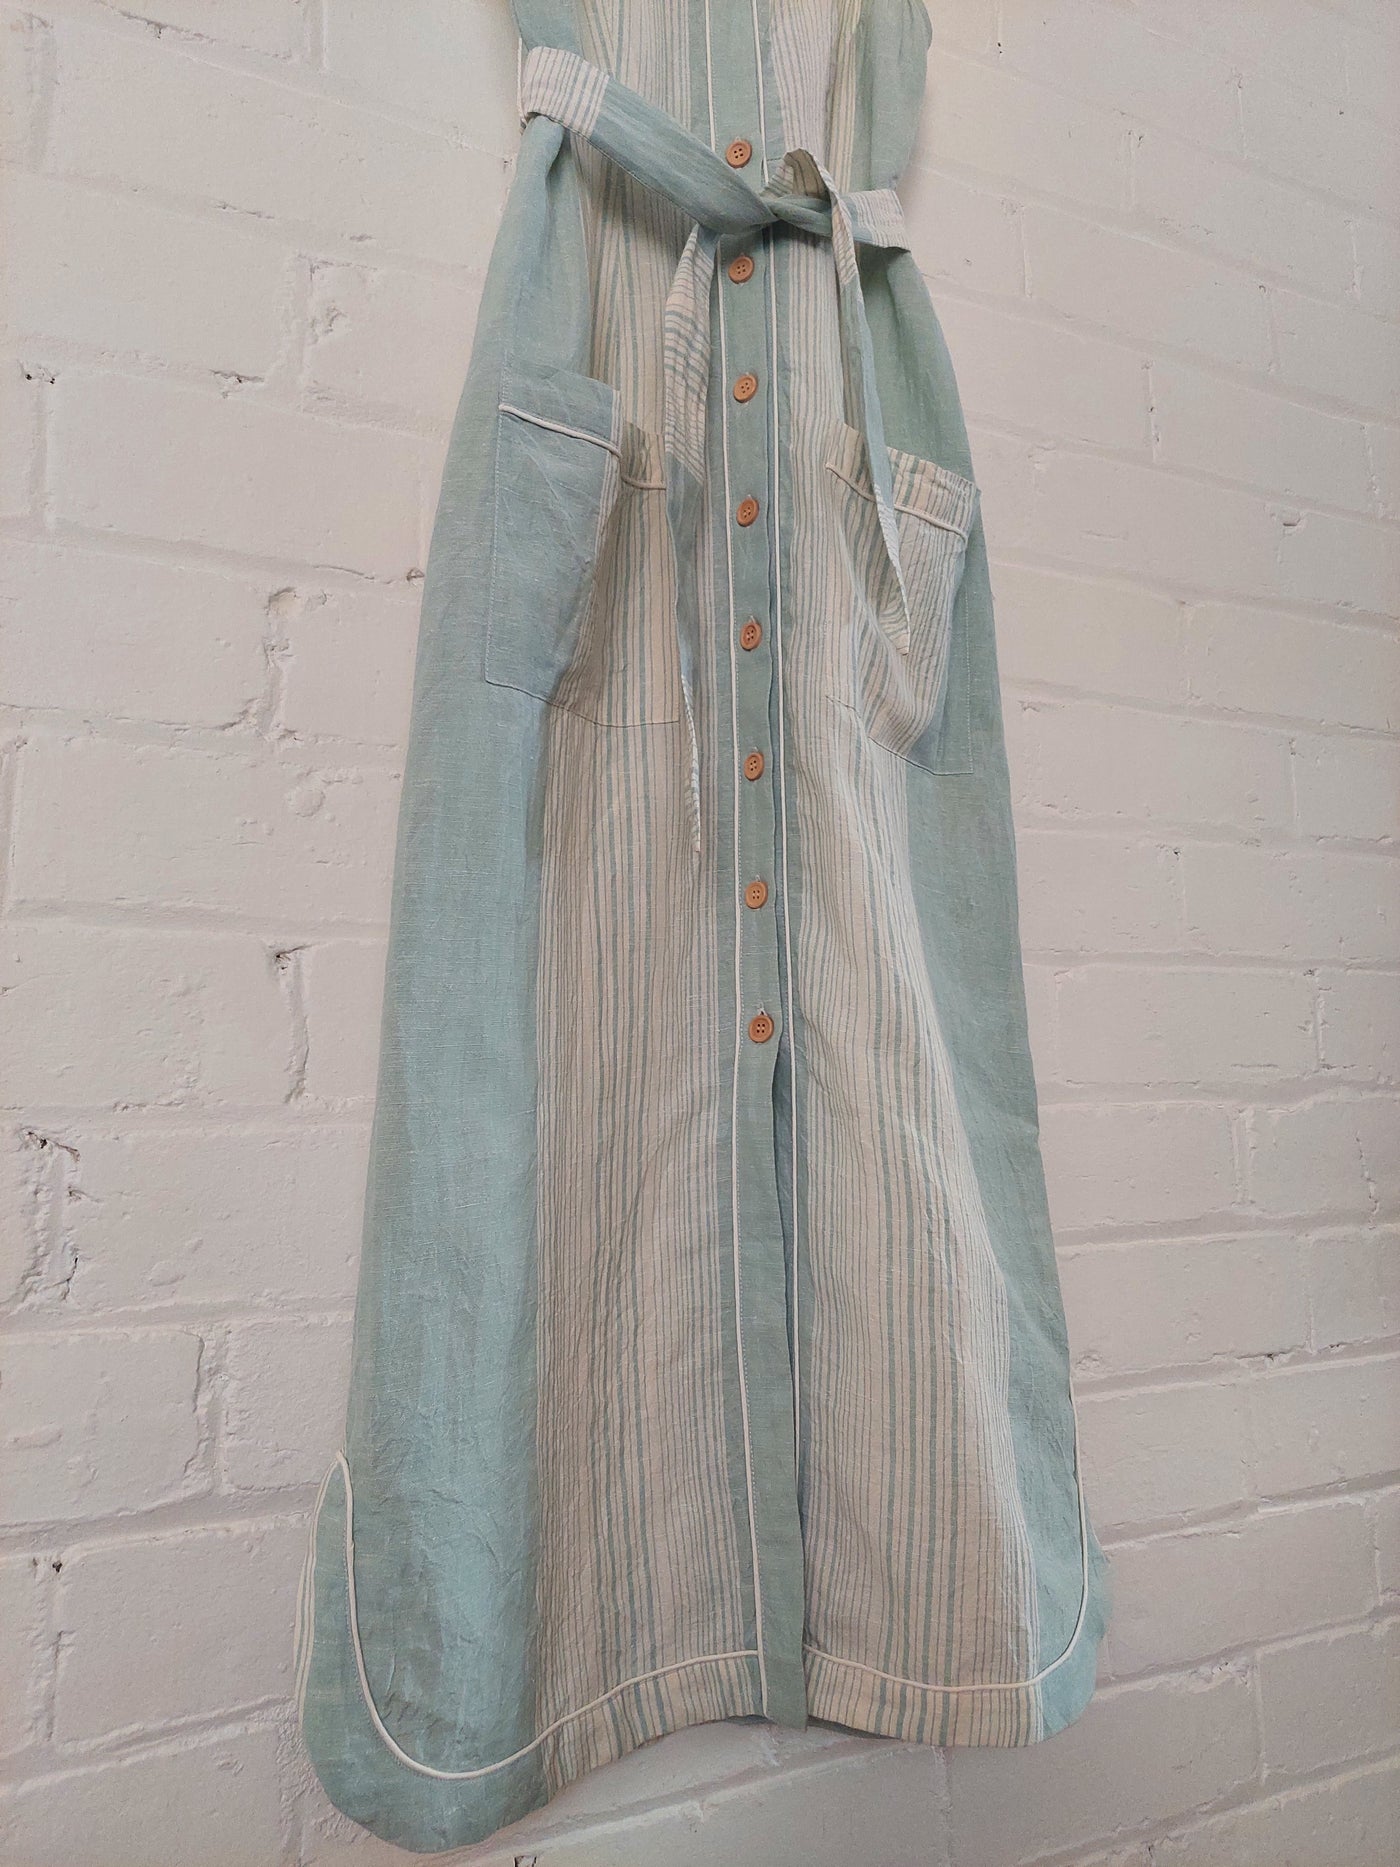 Steele Diana Midi Dress in Skyline Linen, Size S (AU 8)